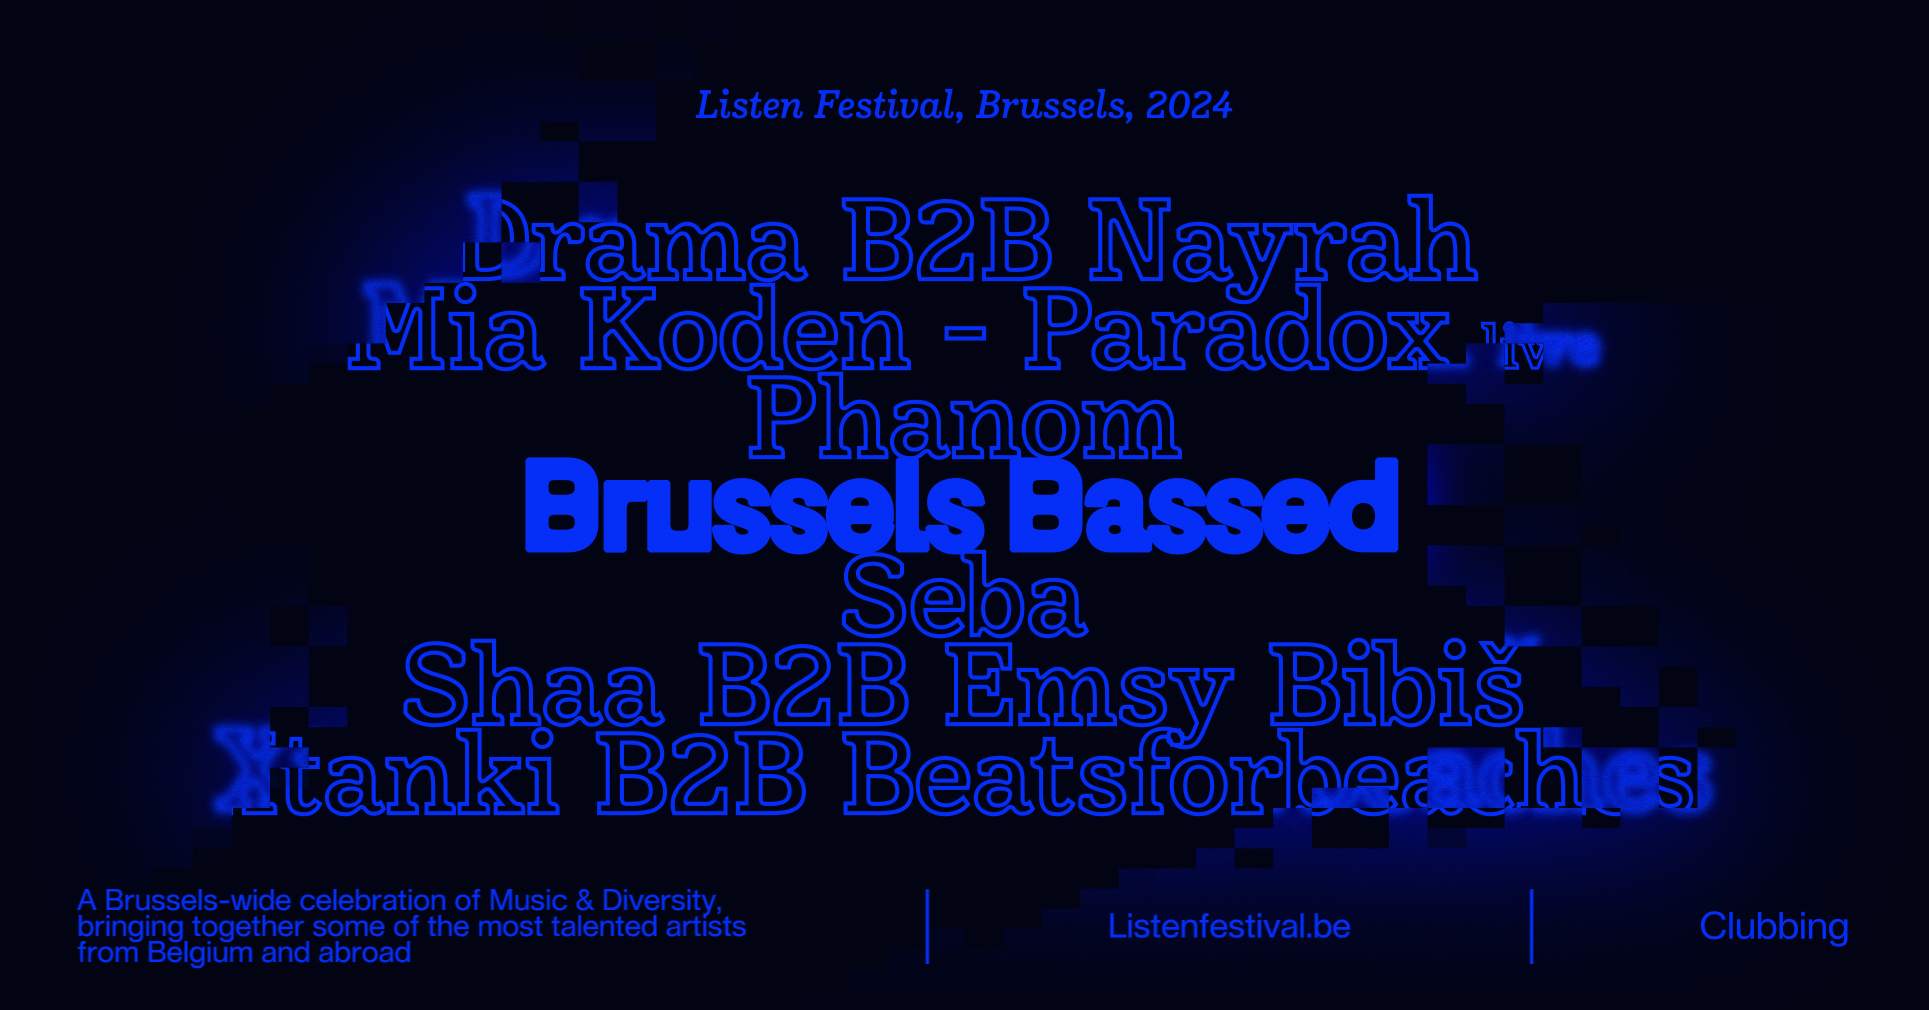 ● Listen x Brussels Bassed - フライヤー表